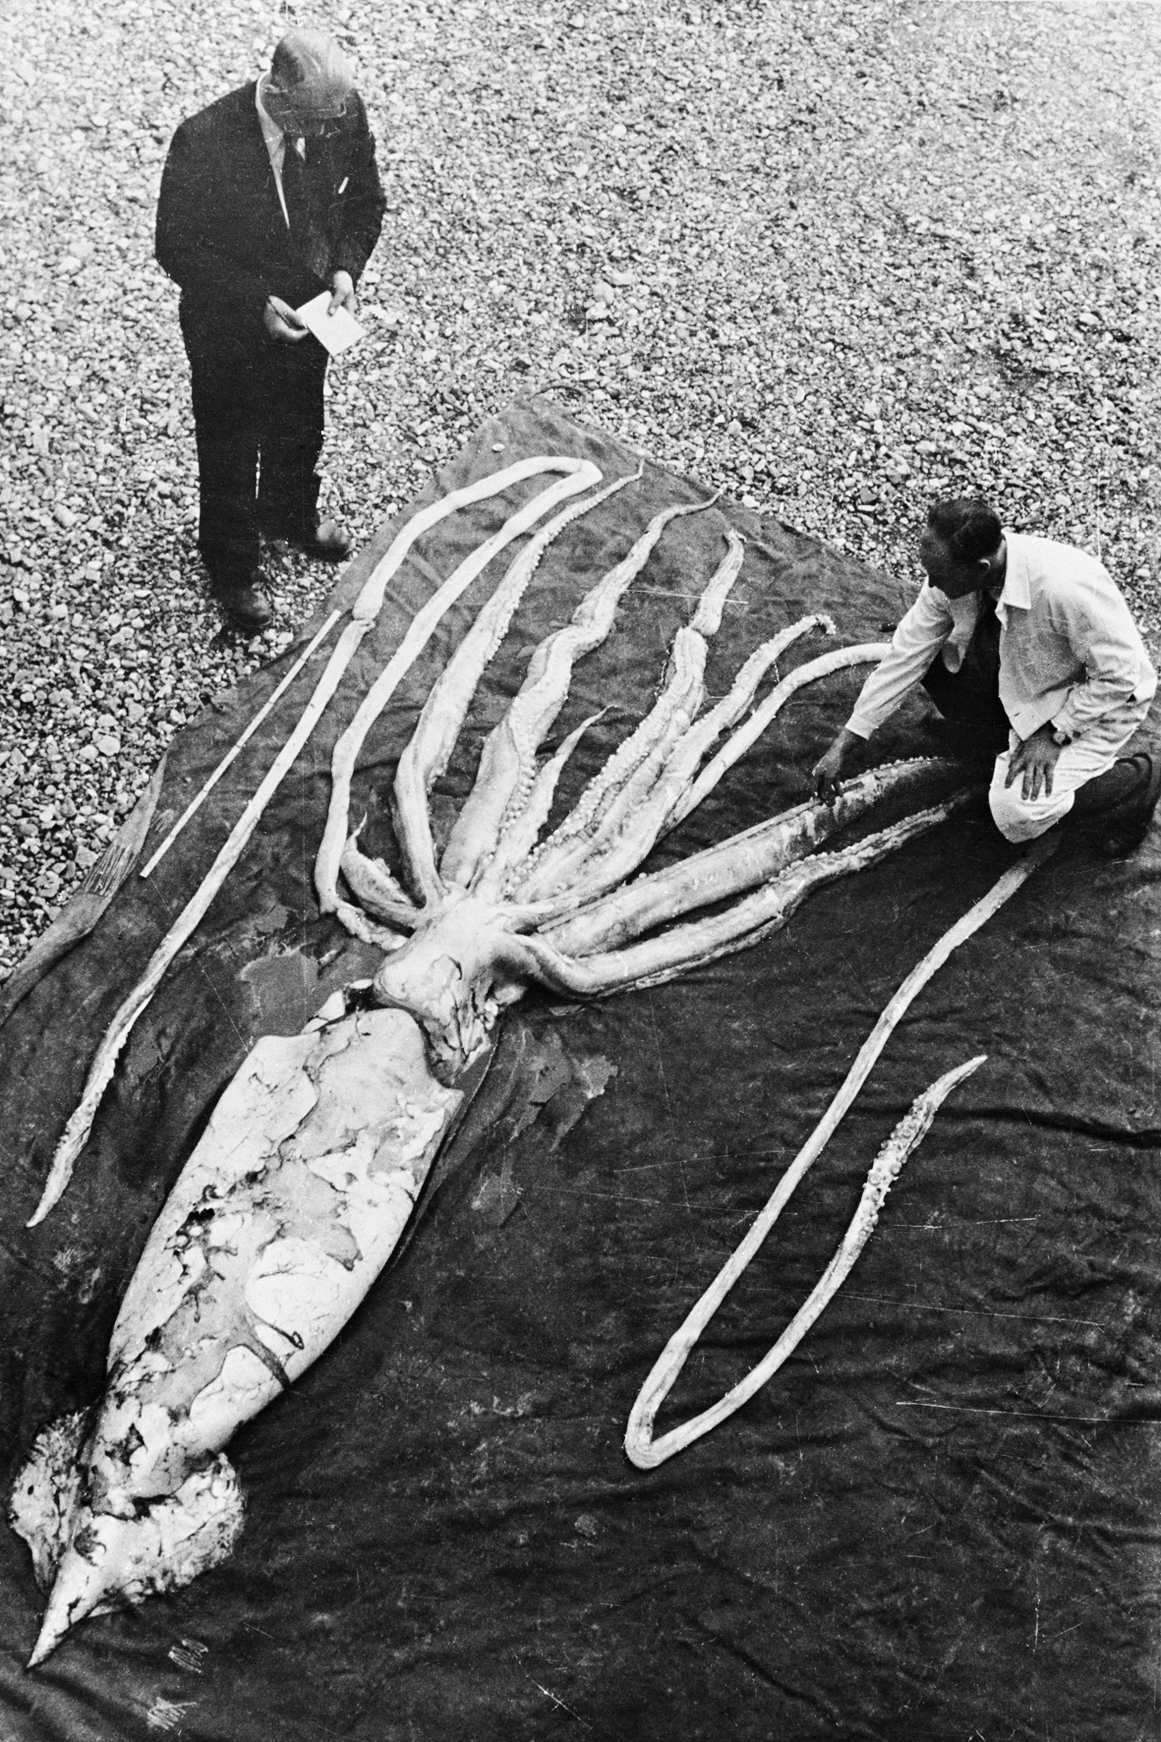 2 m. spalio 1954 d. Ranheime Trondheime rastą milžinišką kalmarą matuoja profesoriai Erlingas Sivertsenas ir Sveinas Haftornas. Išmatuotas egzemplioriaus (antras pagal dydį galvakojis) bendras ilgis buvo 9.2 metro. NTNU gamtos istorijos ir archeologijos muziejus / Wikimedia Commons